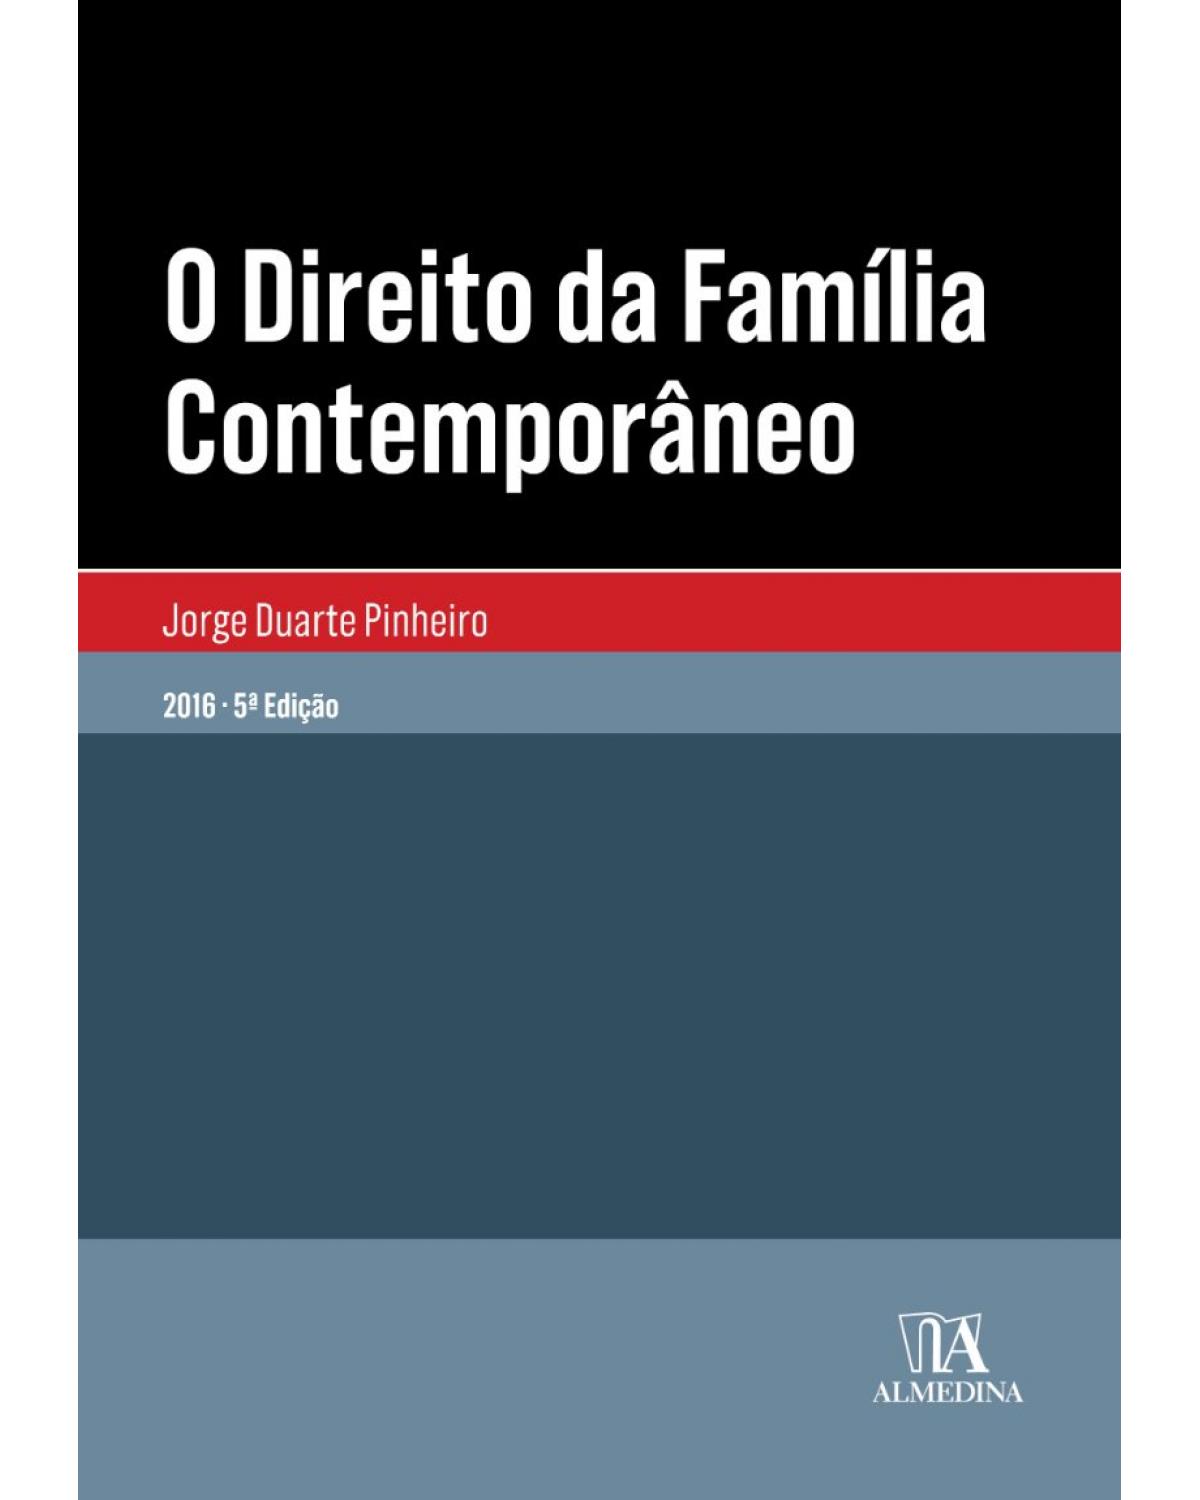 O direito da família contemporâneo - 5ª Edição | 2016